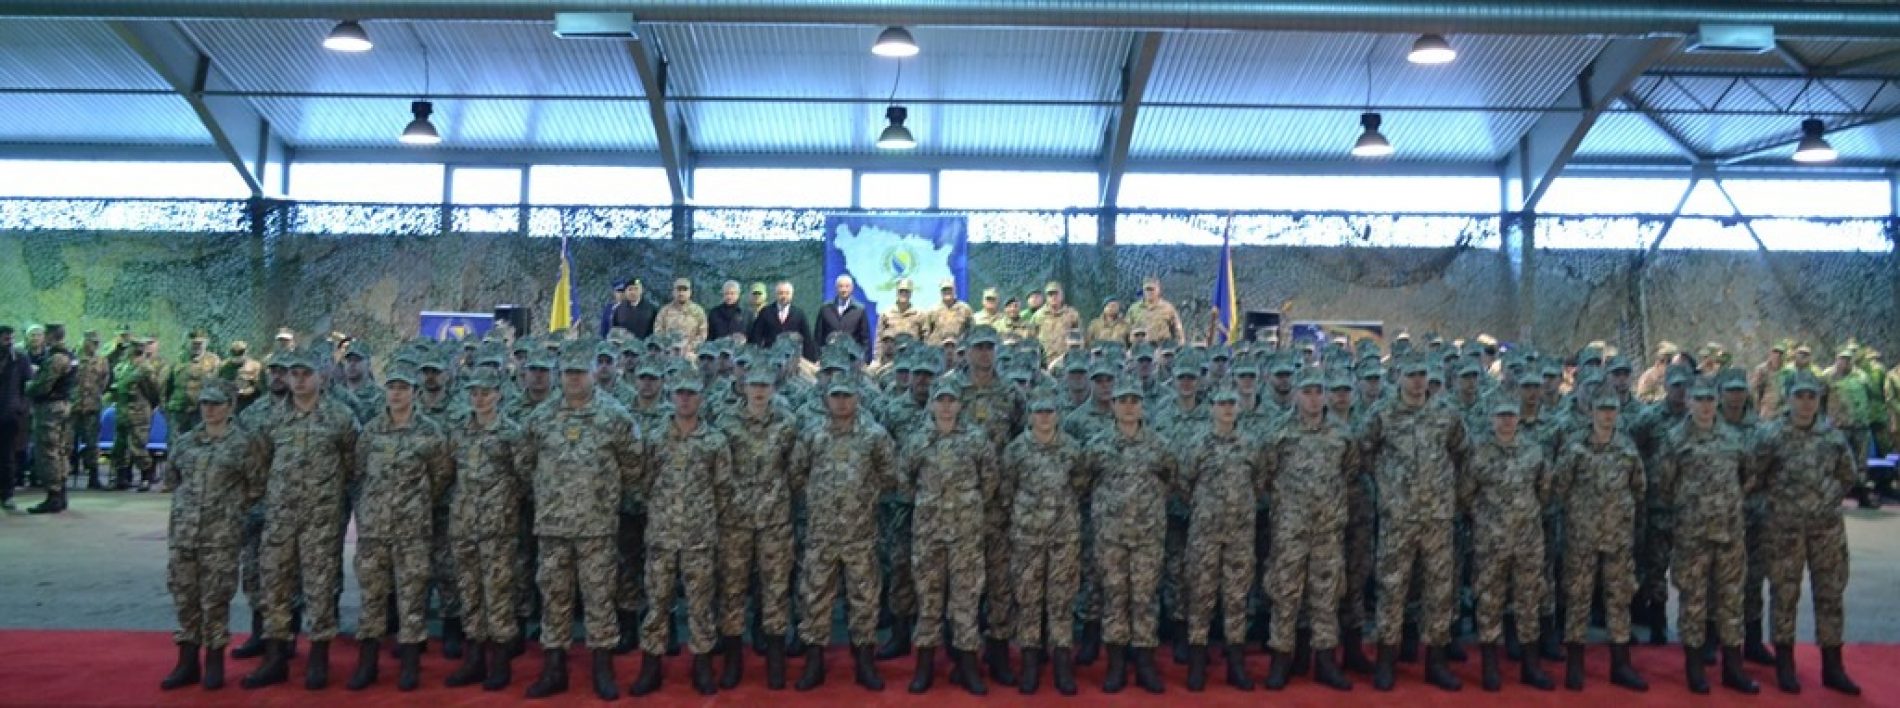 Svečana ceremonija promocije X klase ofcira i XII klase podoficira Oružanih snaga Bosne i Hercegovine